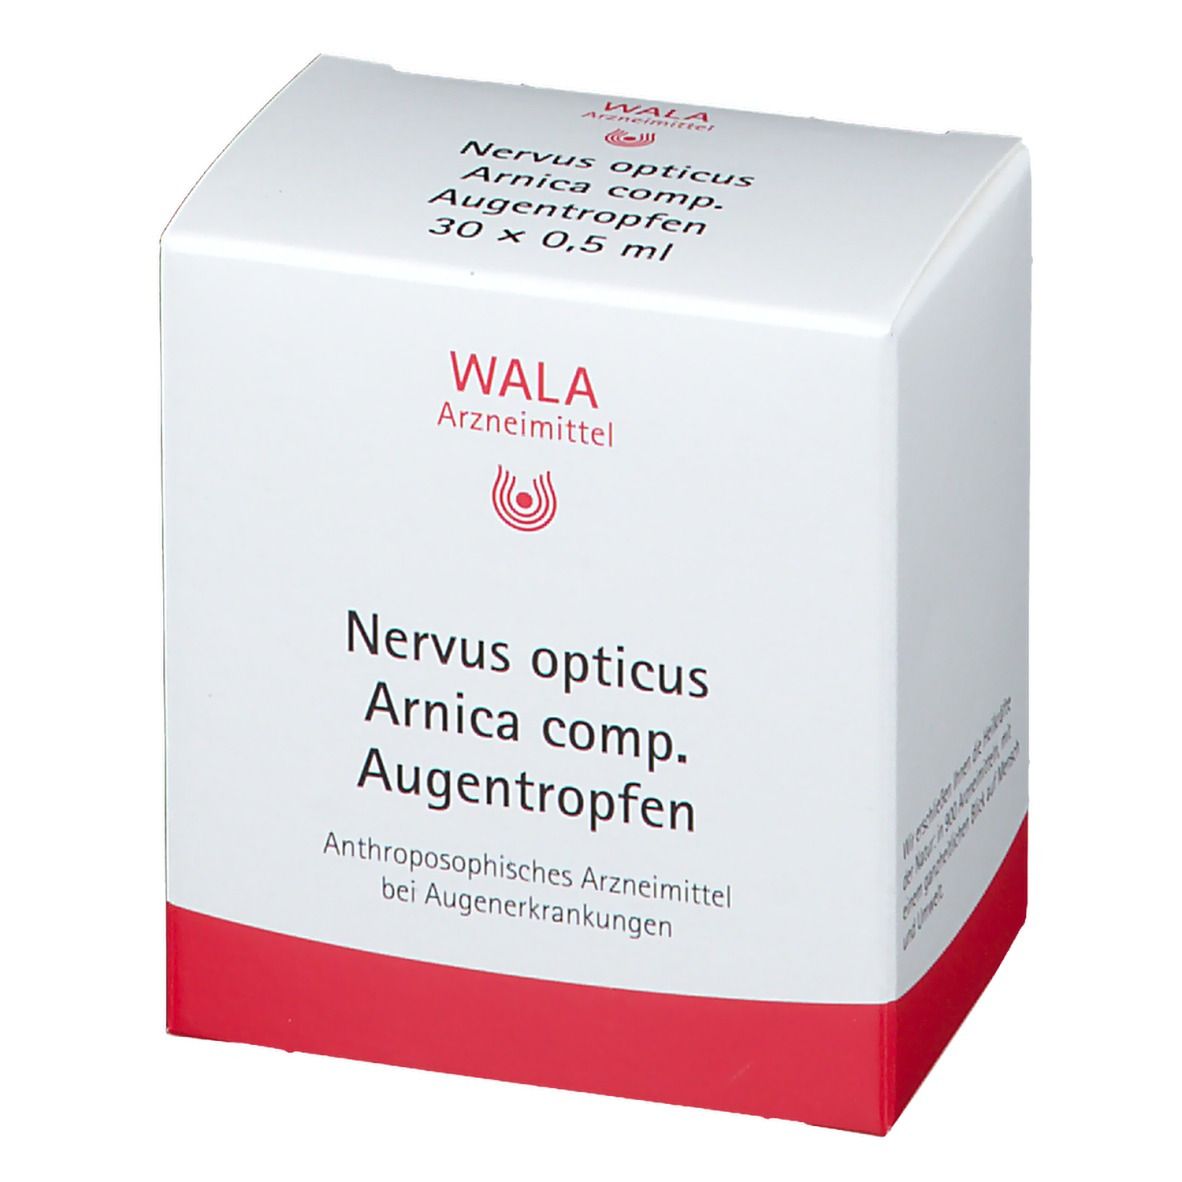 WALA® Nervus opticus Arnica comp Augentropfen